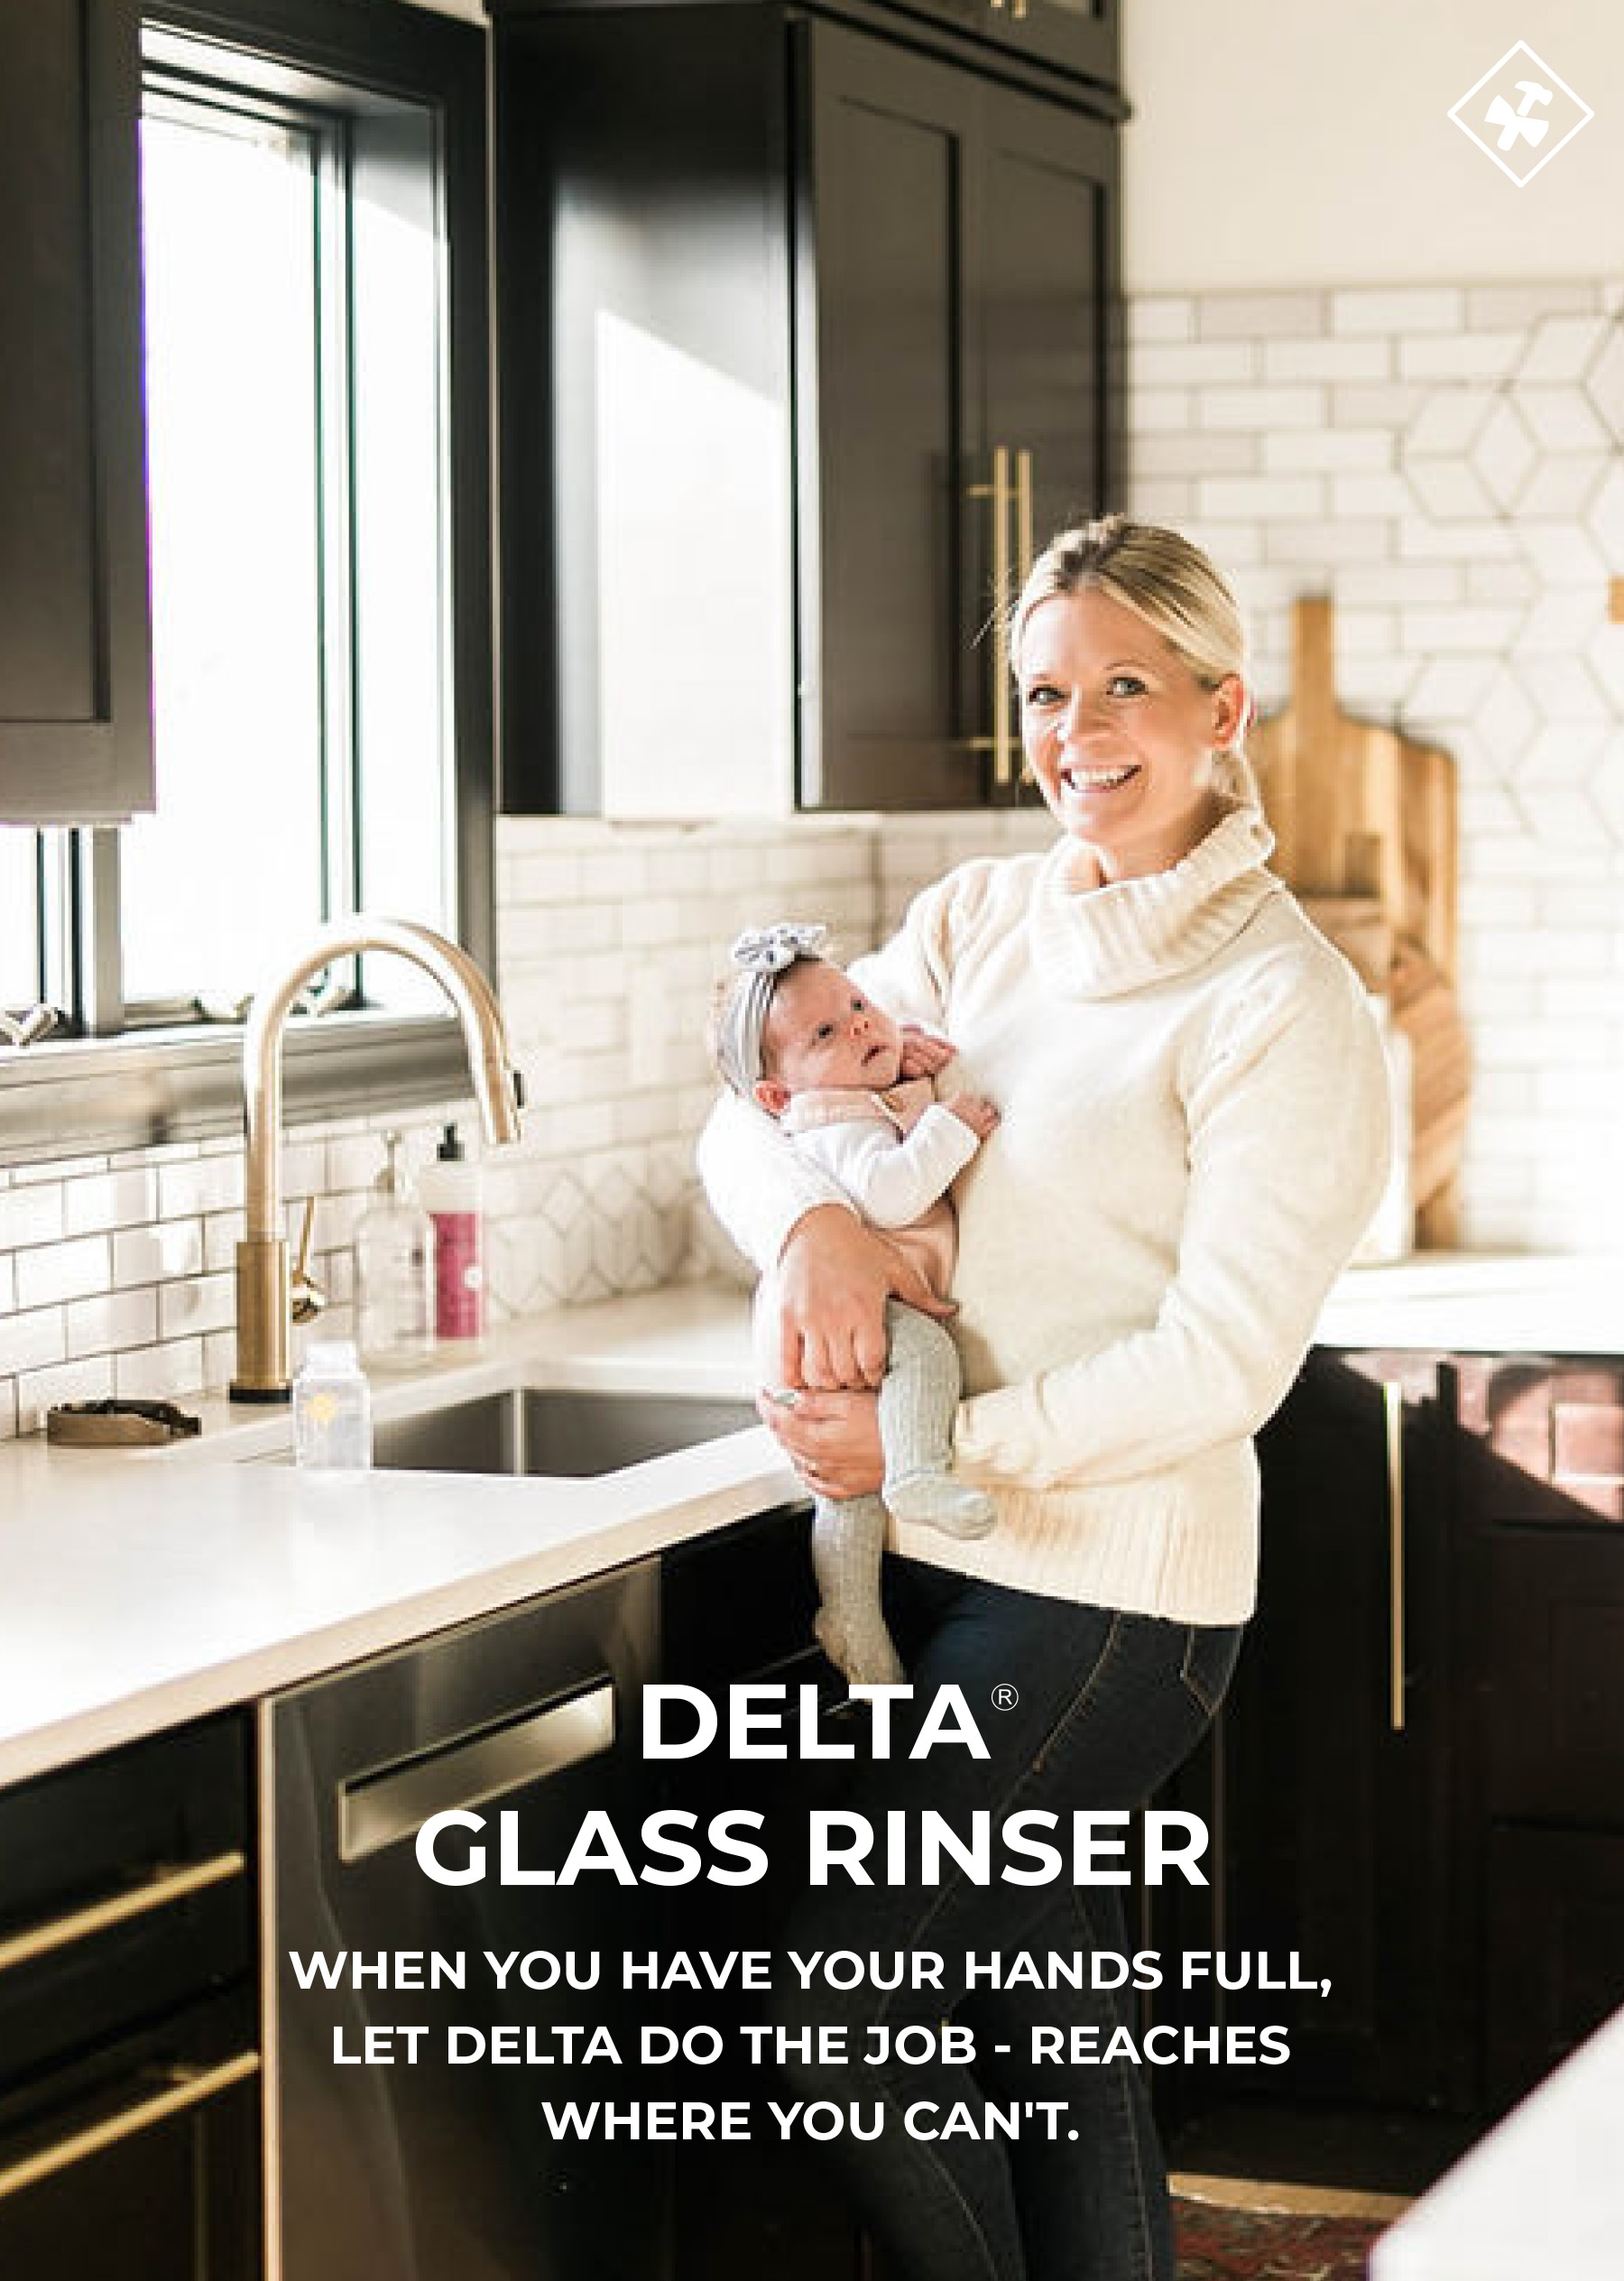 So Hello to the Delta Glass Rinser